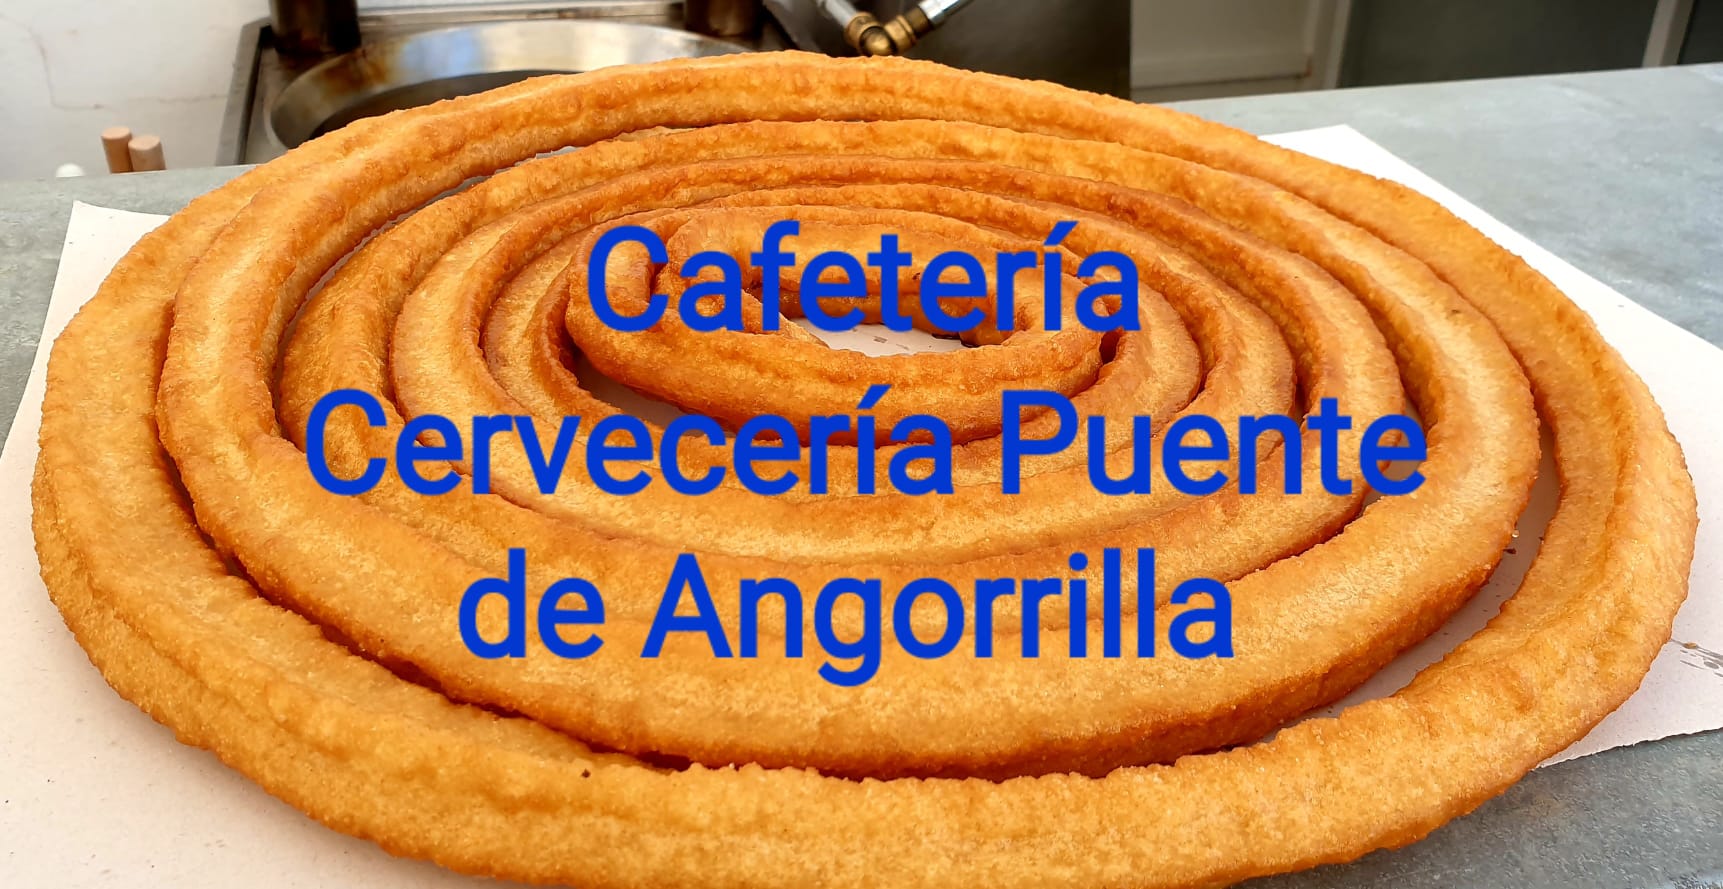 Images Cafeteria y Cerveceria Puente Angorrilla